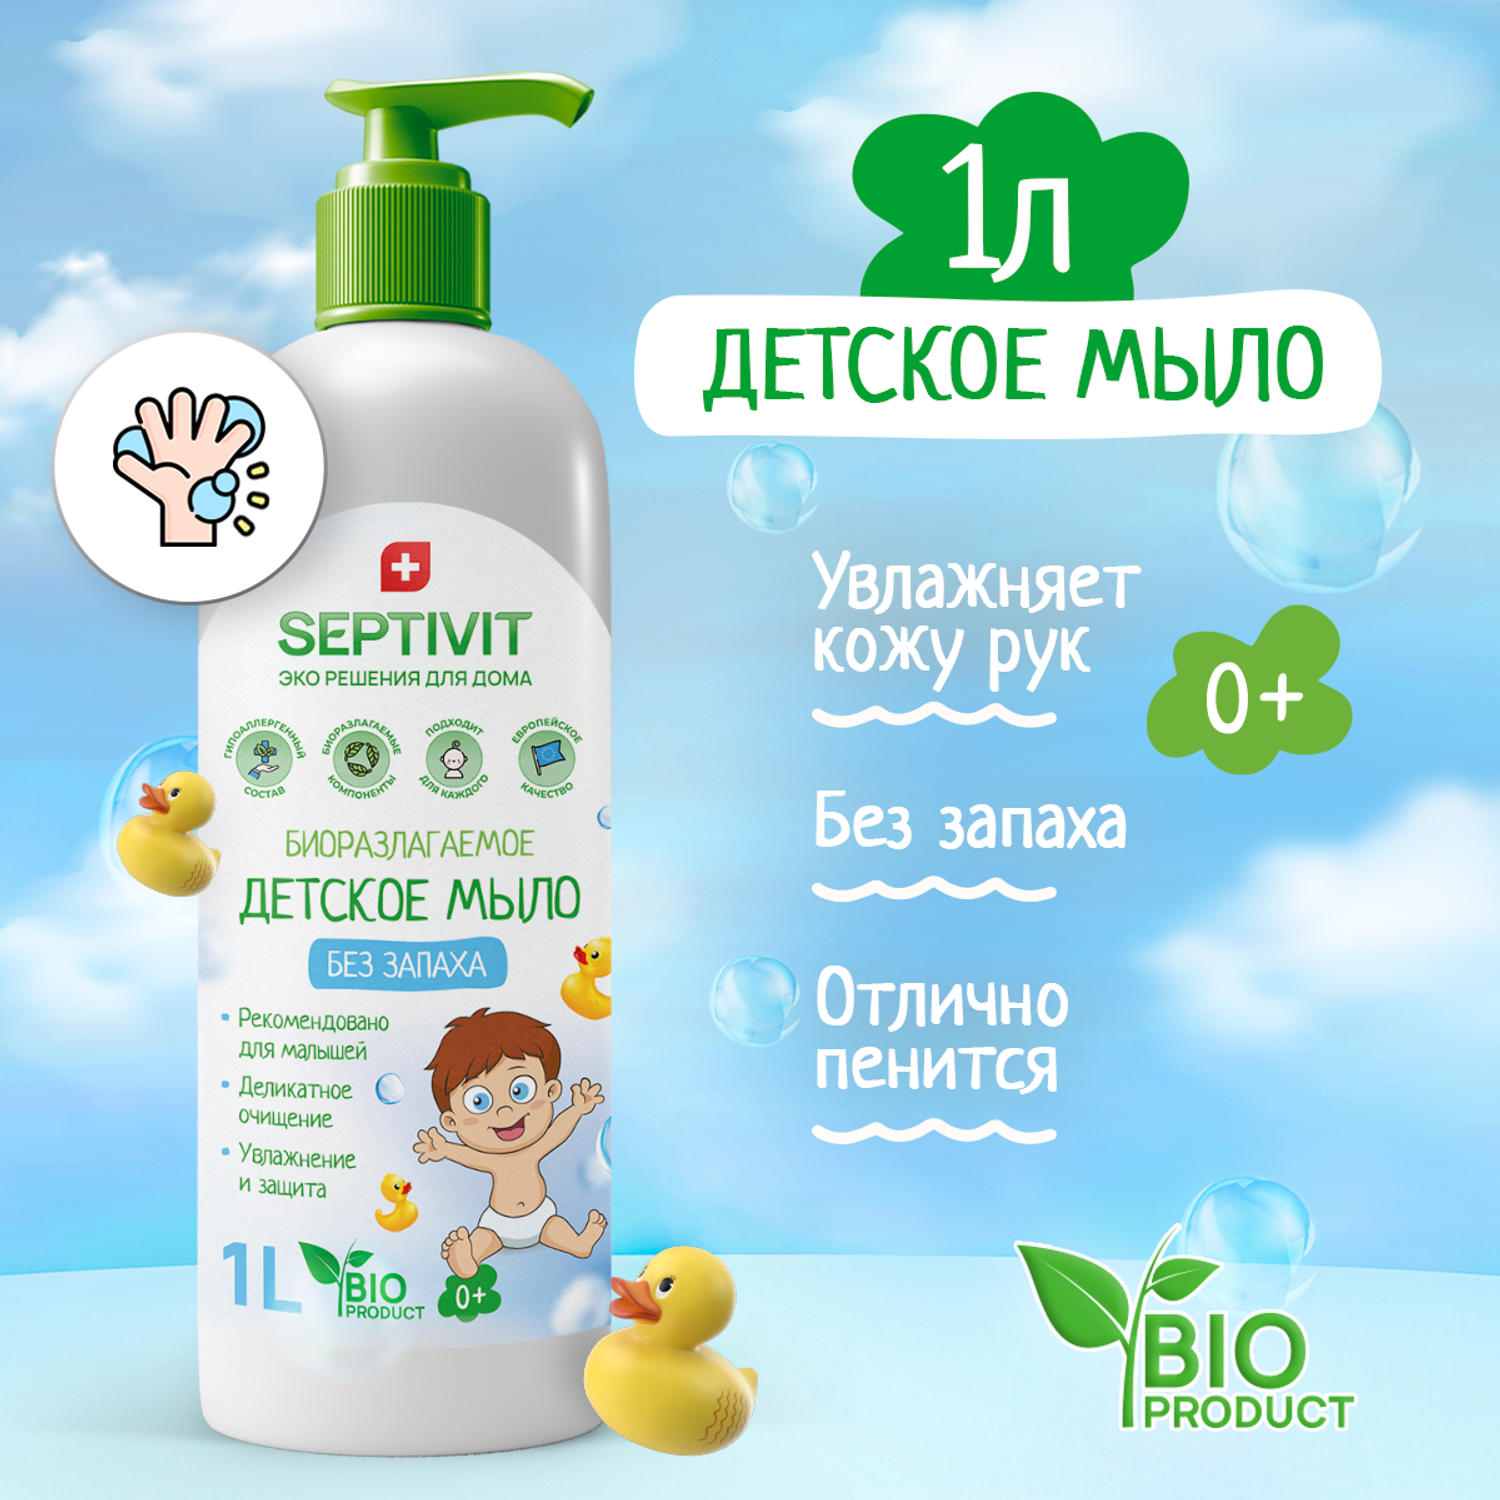 Детское жидкое мыло SEPTIVIT Premium Без запаха 1л - фото 2